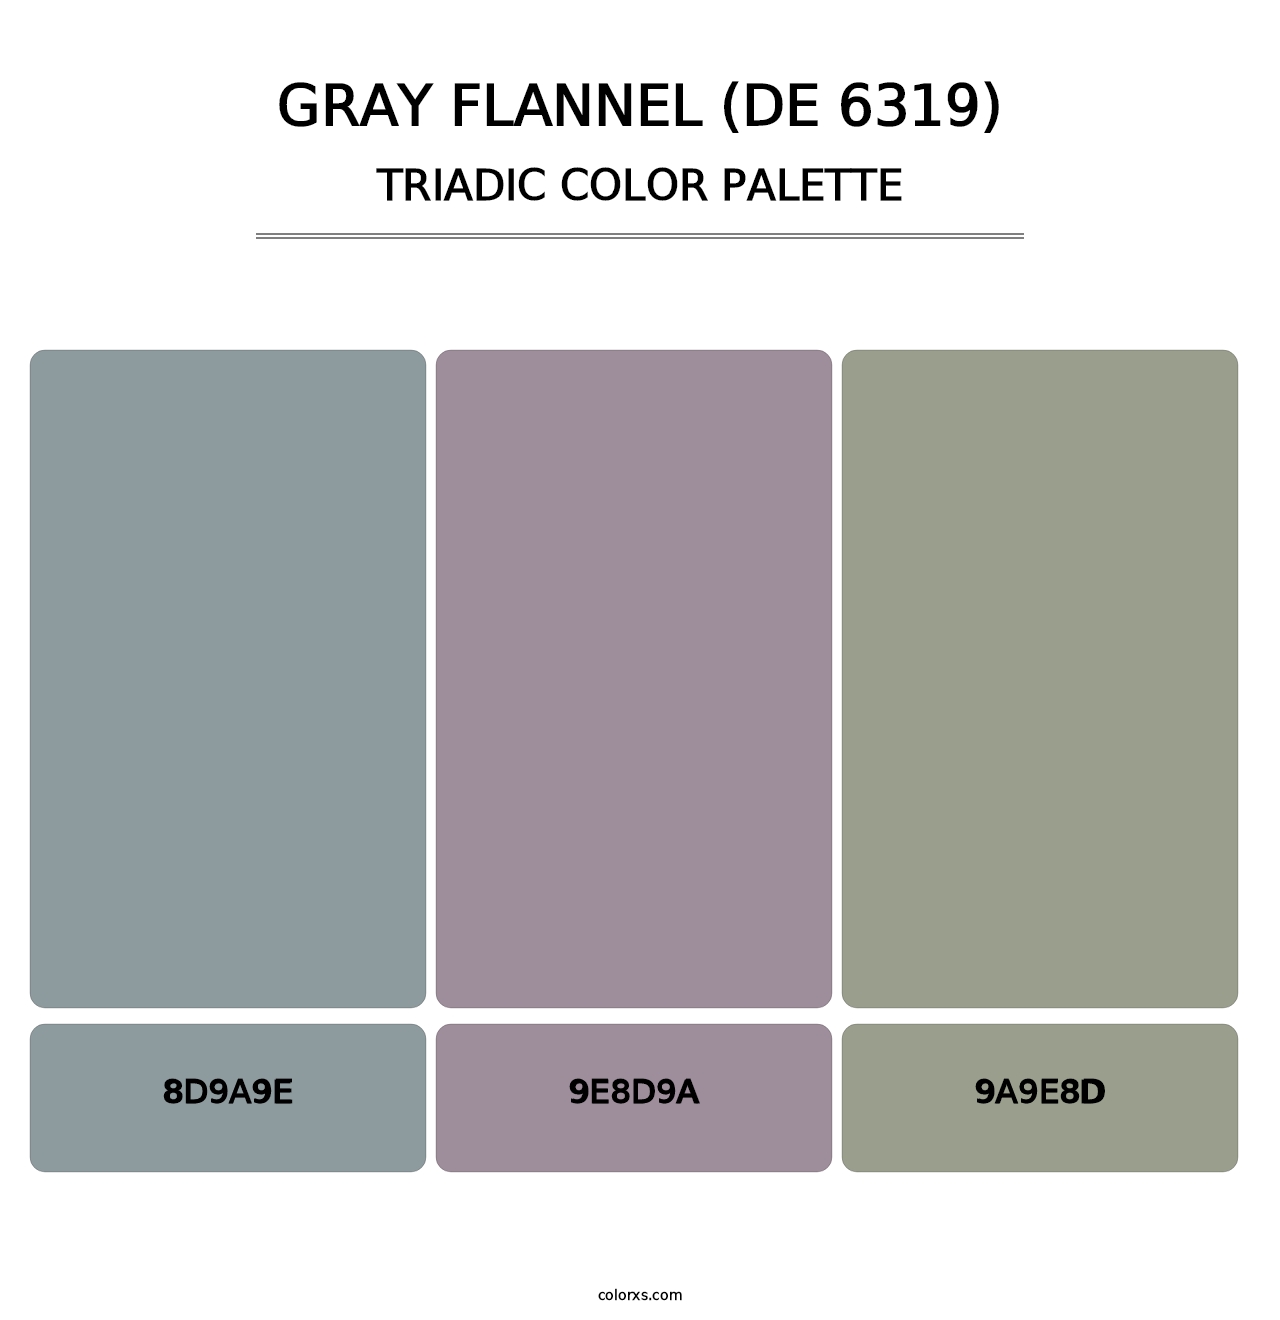 Gray Flannel (DE 6319) - Triadic Color Palette